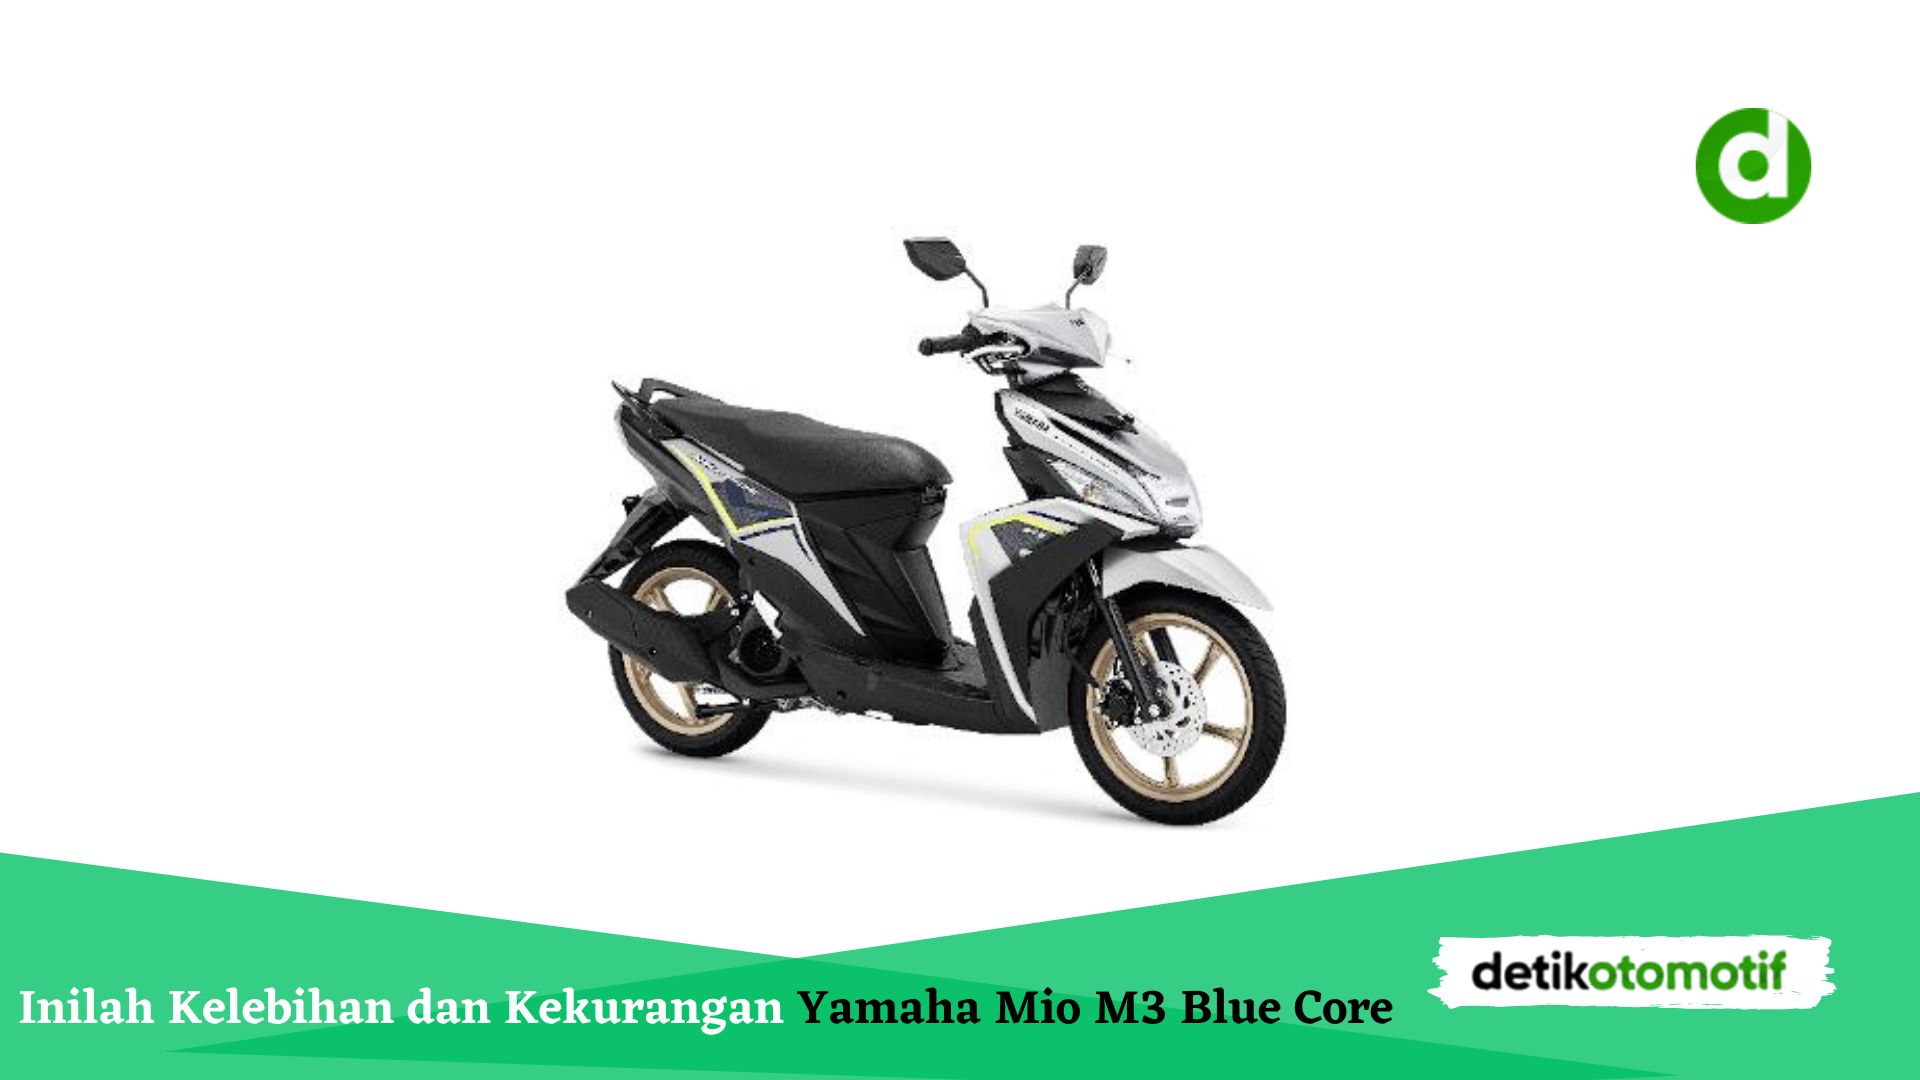 Inilah Kelebihan dan Kekurangan Yamaha Mio M3 Blue Core